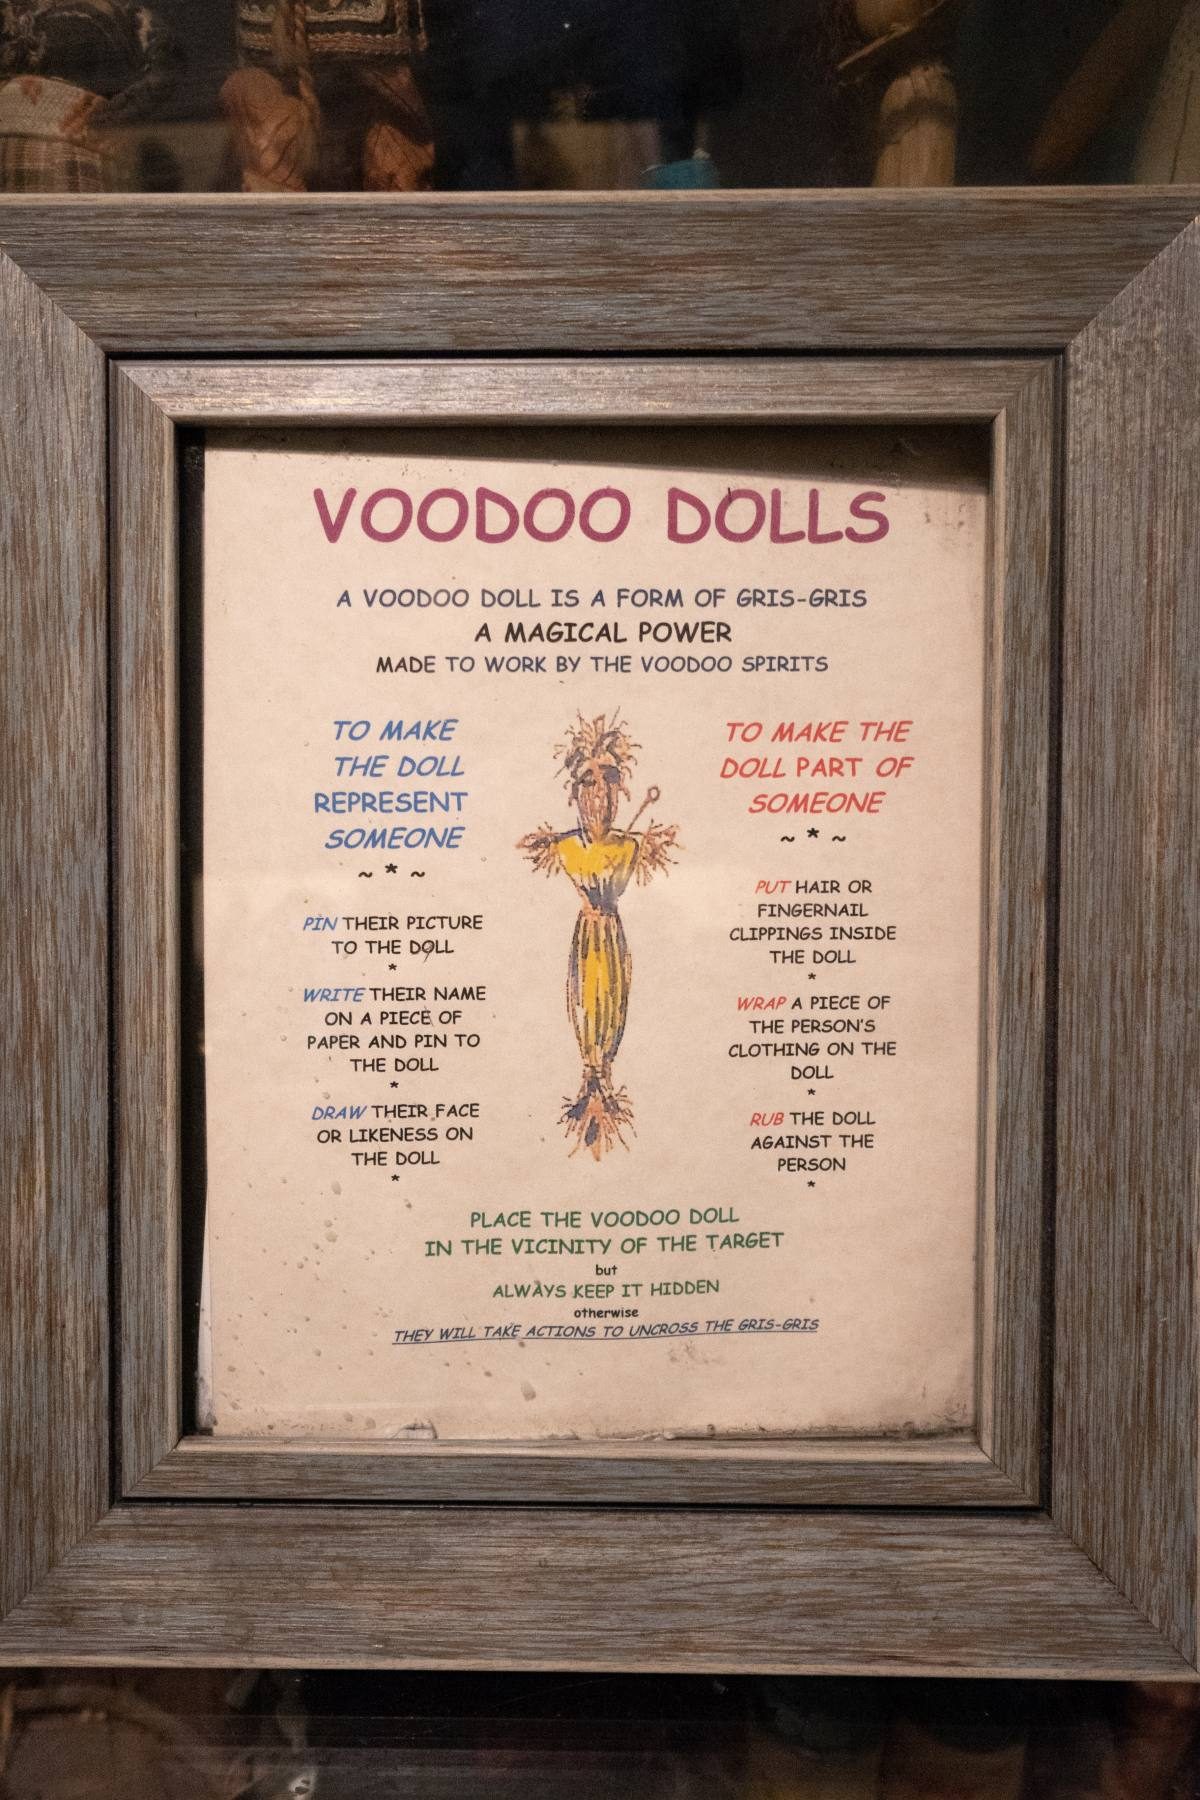 Museum of Voodoo